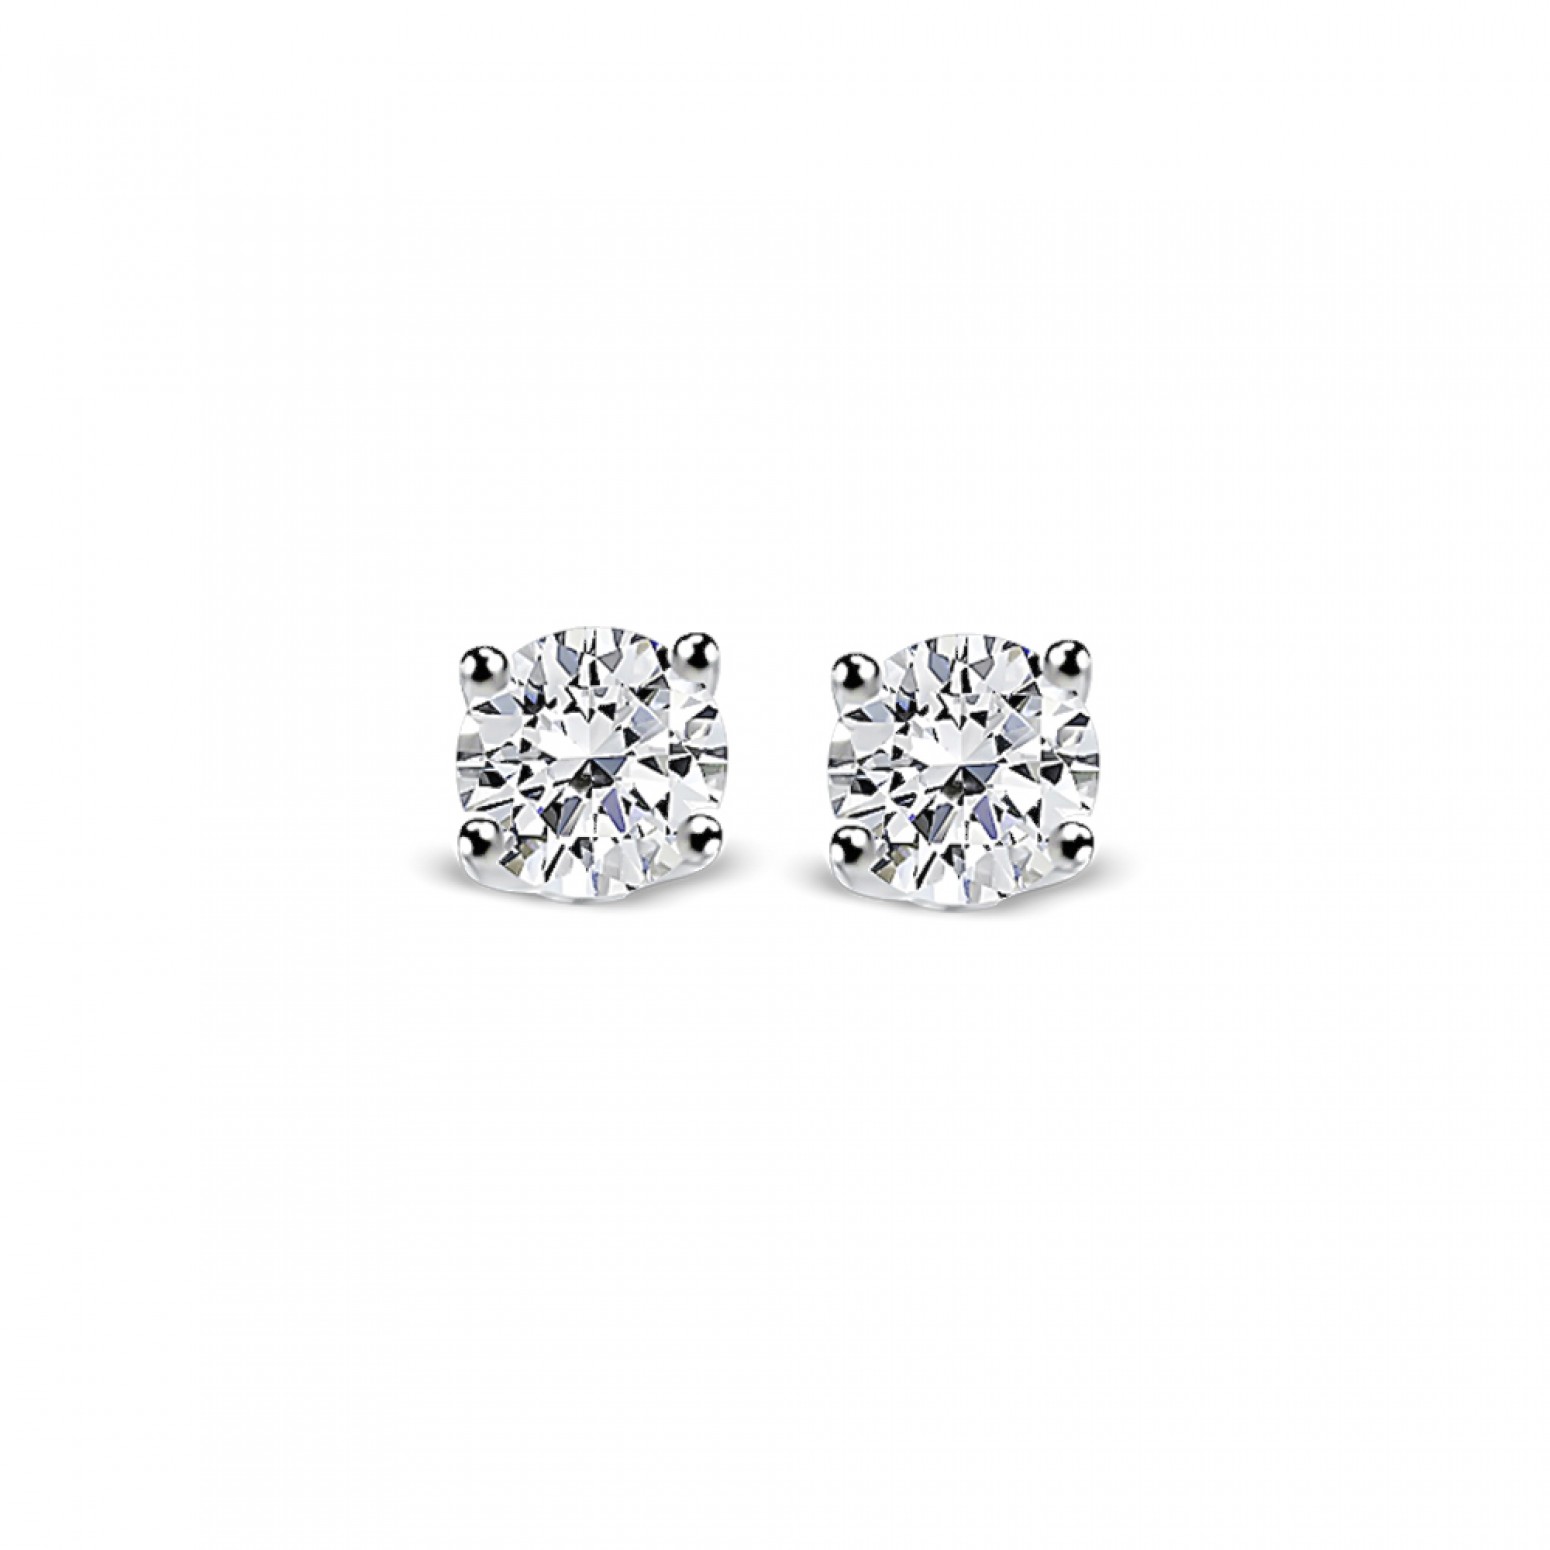 Solitaire earrings 18K white gold with diamonds 0.24ct, VS2, E from IGL sk3232 EARRINGS Κοσμηματα - chrilia.gr